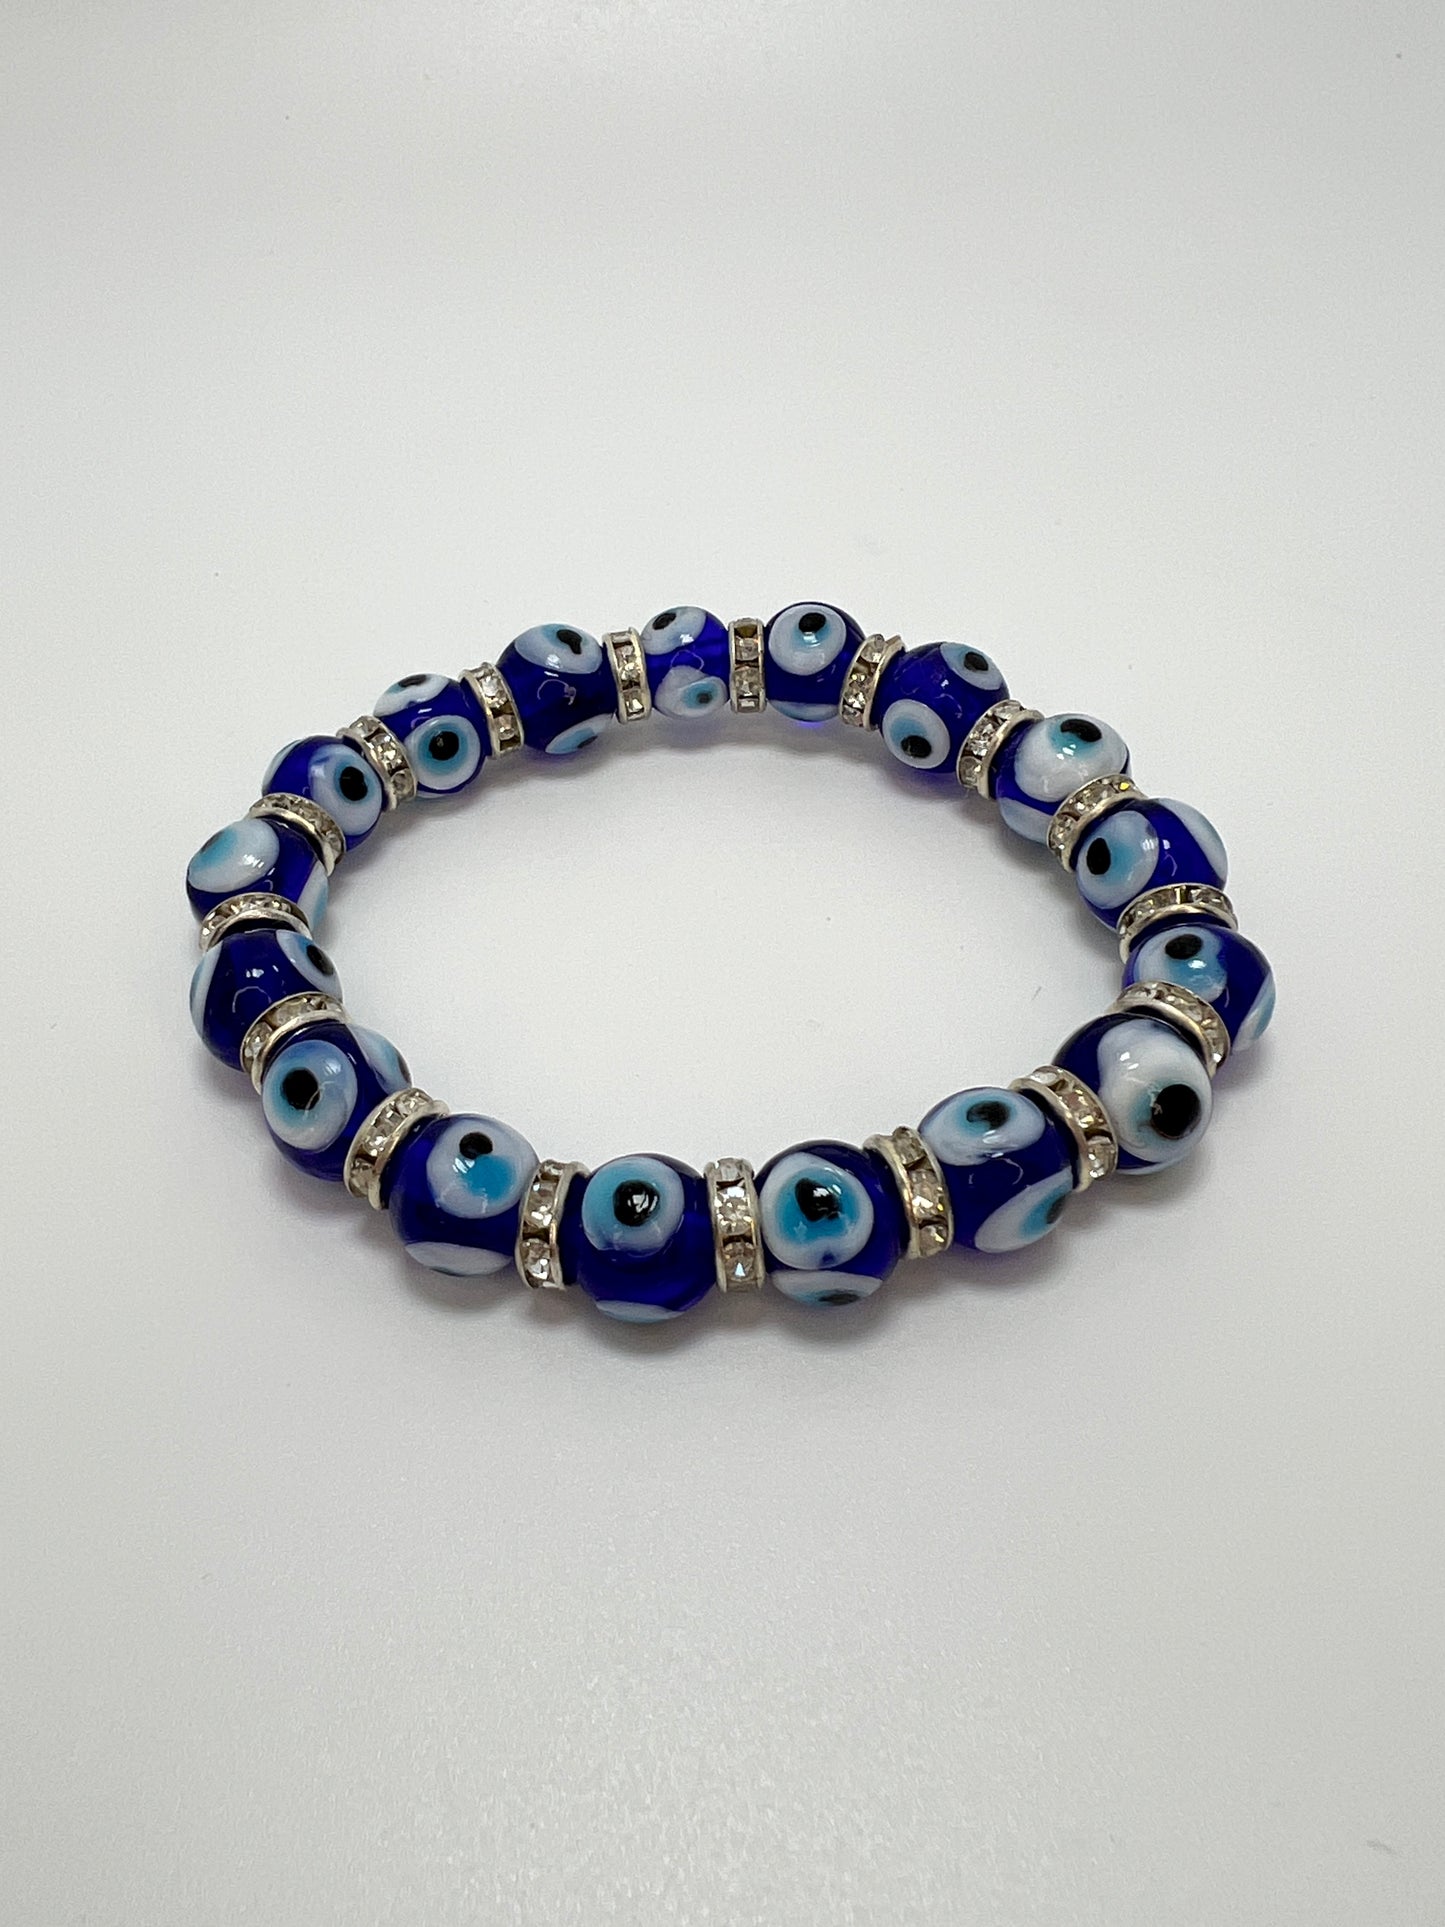 Evil eye glass beads bracelet